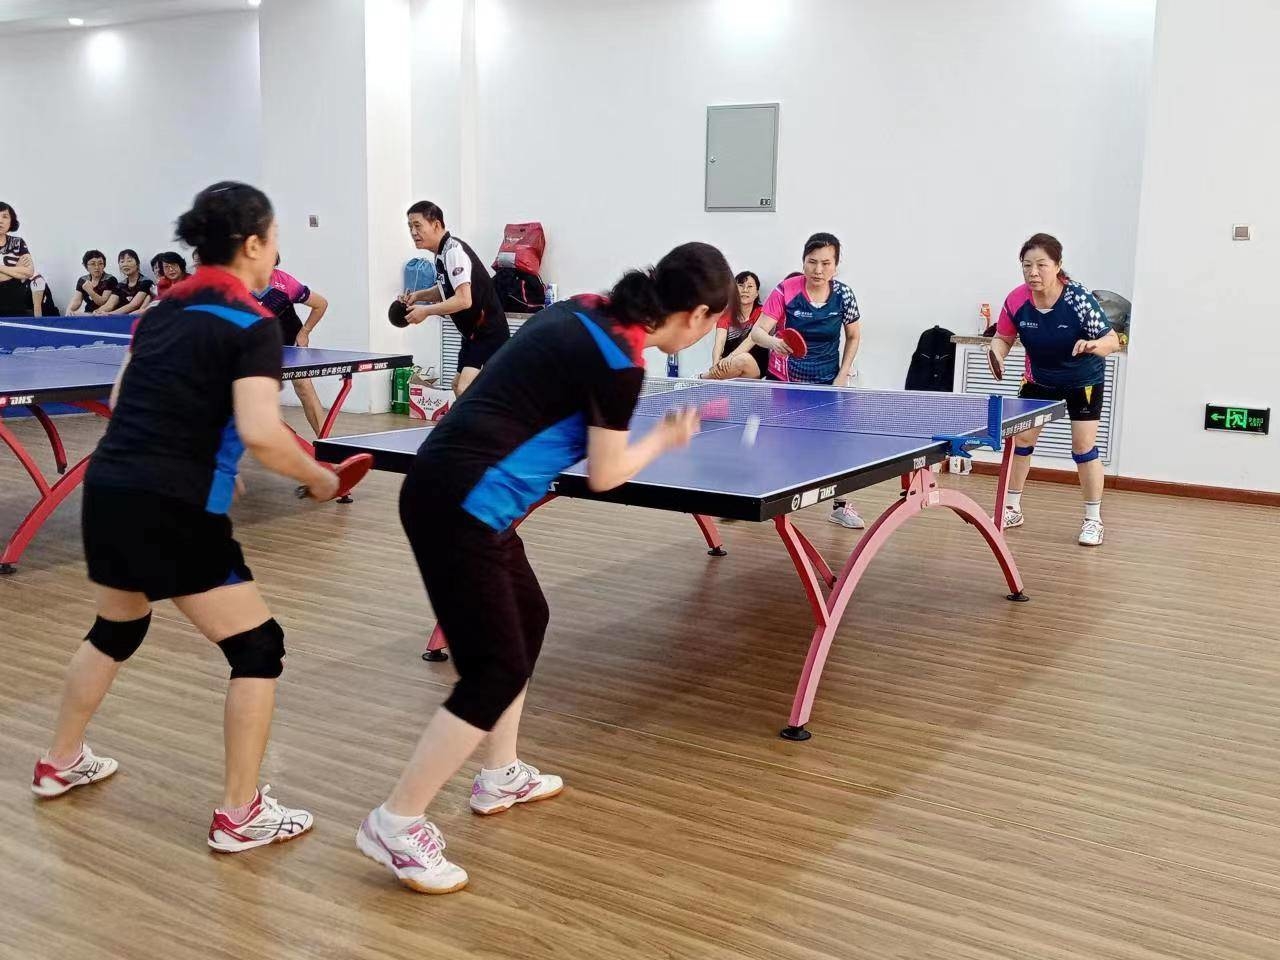 延吉市老体协举办中老年人乒乓球比赛